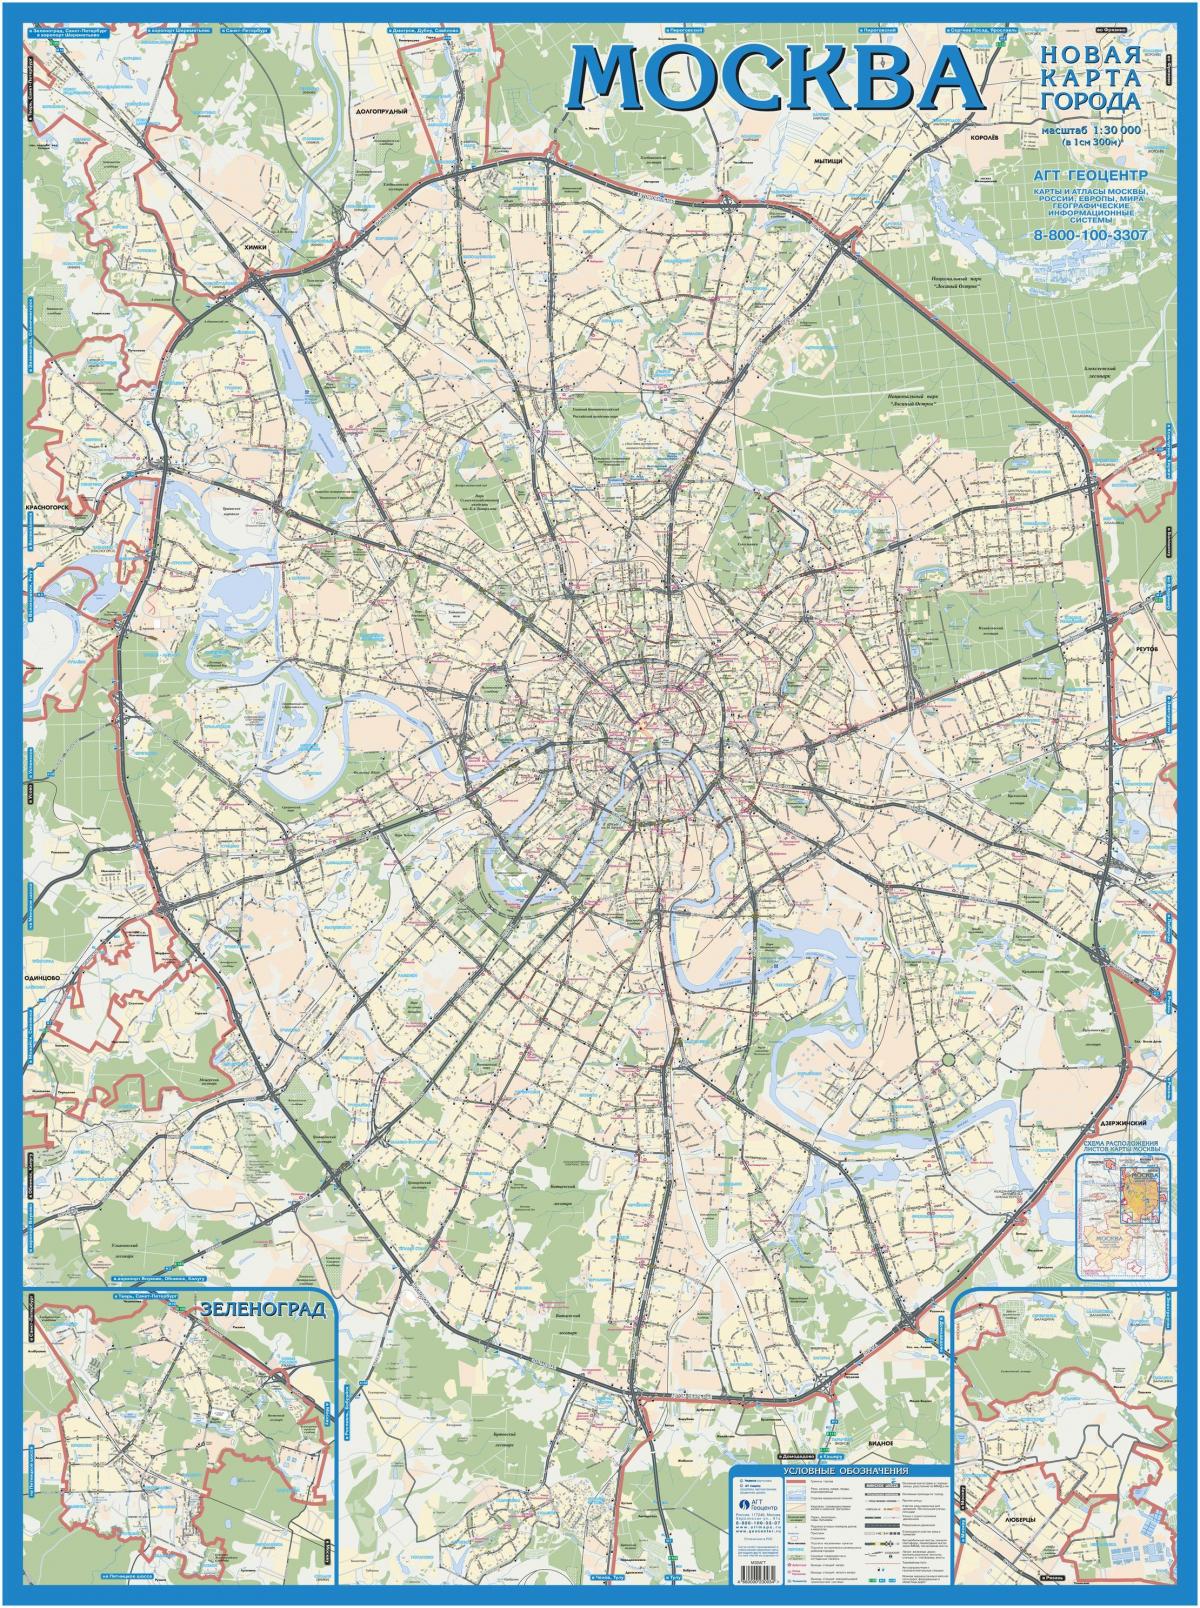 موسكفا خريطة طبوغرافية